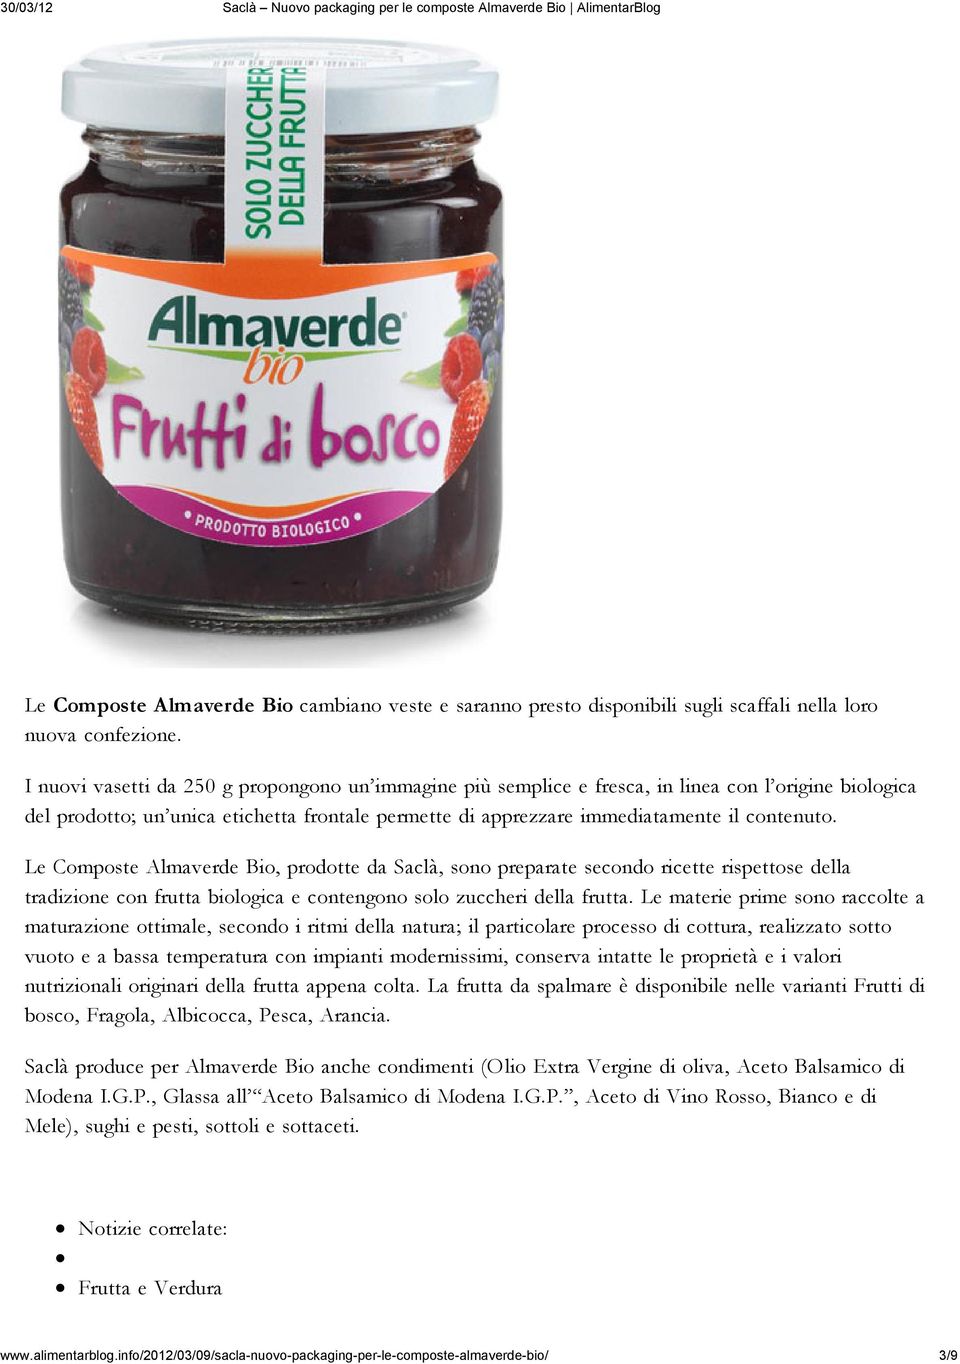 Le Composte Almaverde Bio, prodotte da Saclà, sono preparate secondo ricette rispettose della tradizione con frutta biologica e contengono solo zuccheri della frutta.